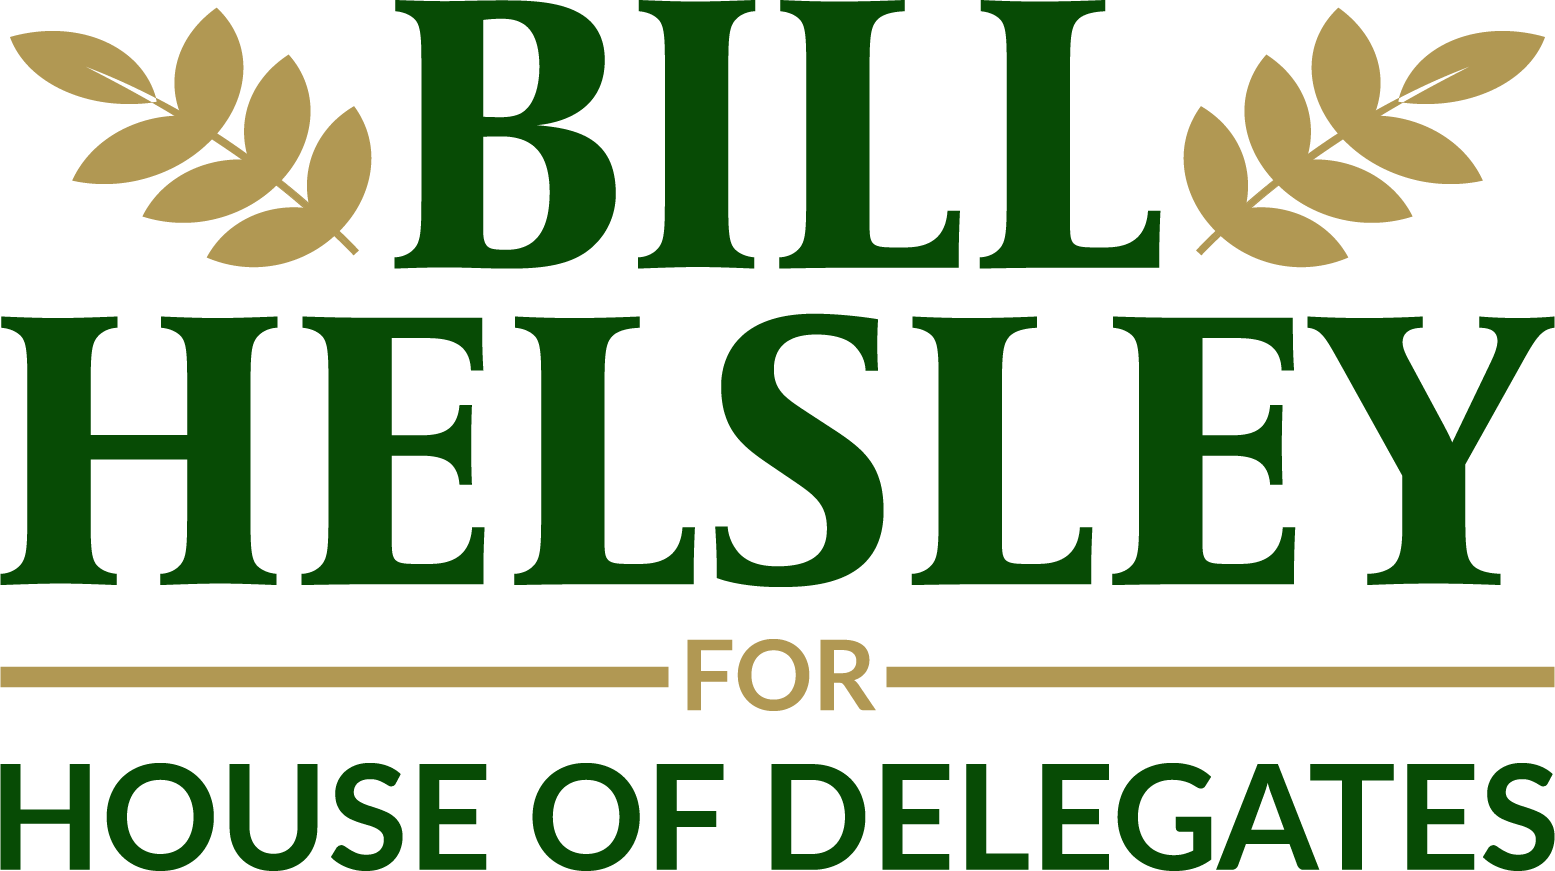 Bill Helsley for House of Delegates